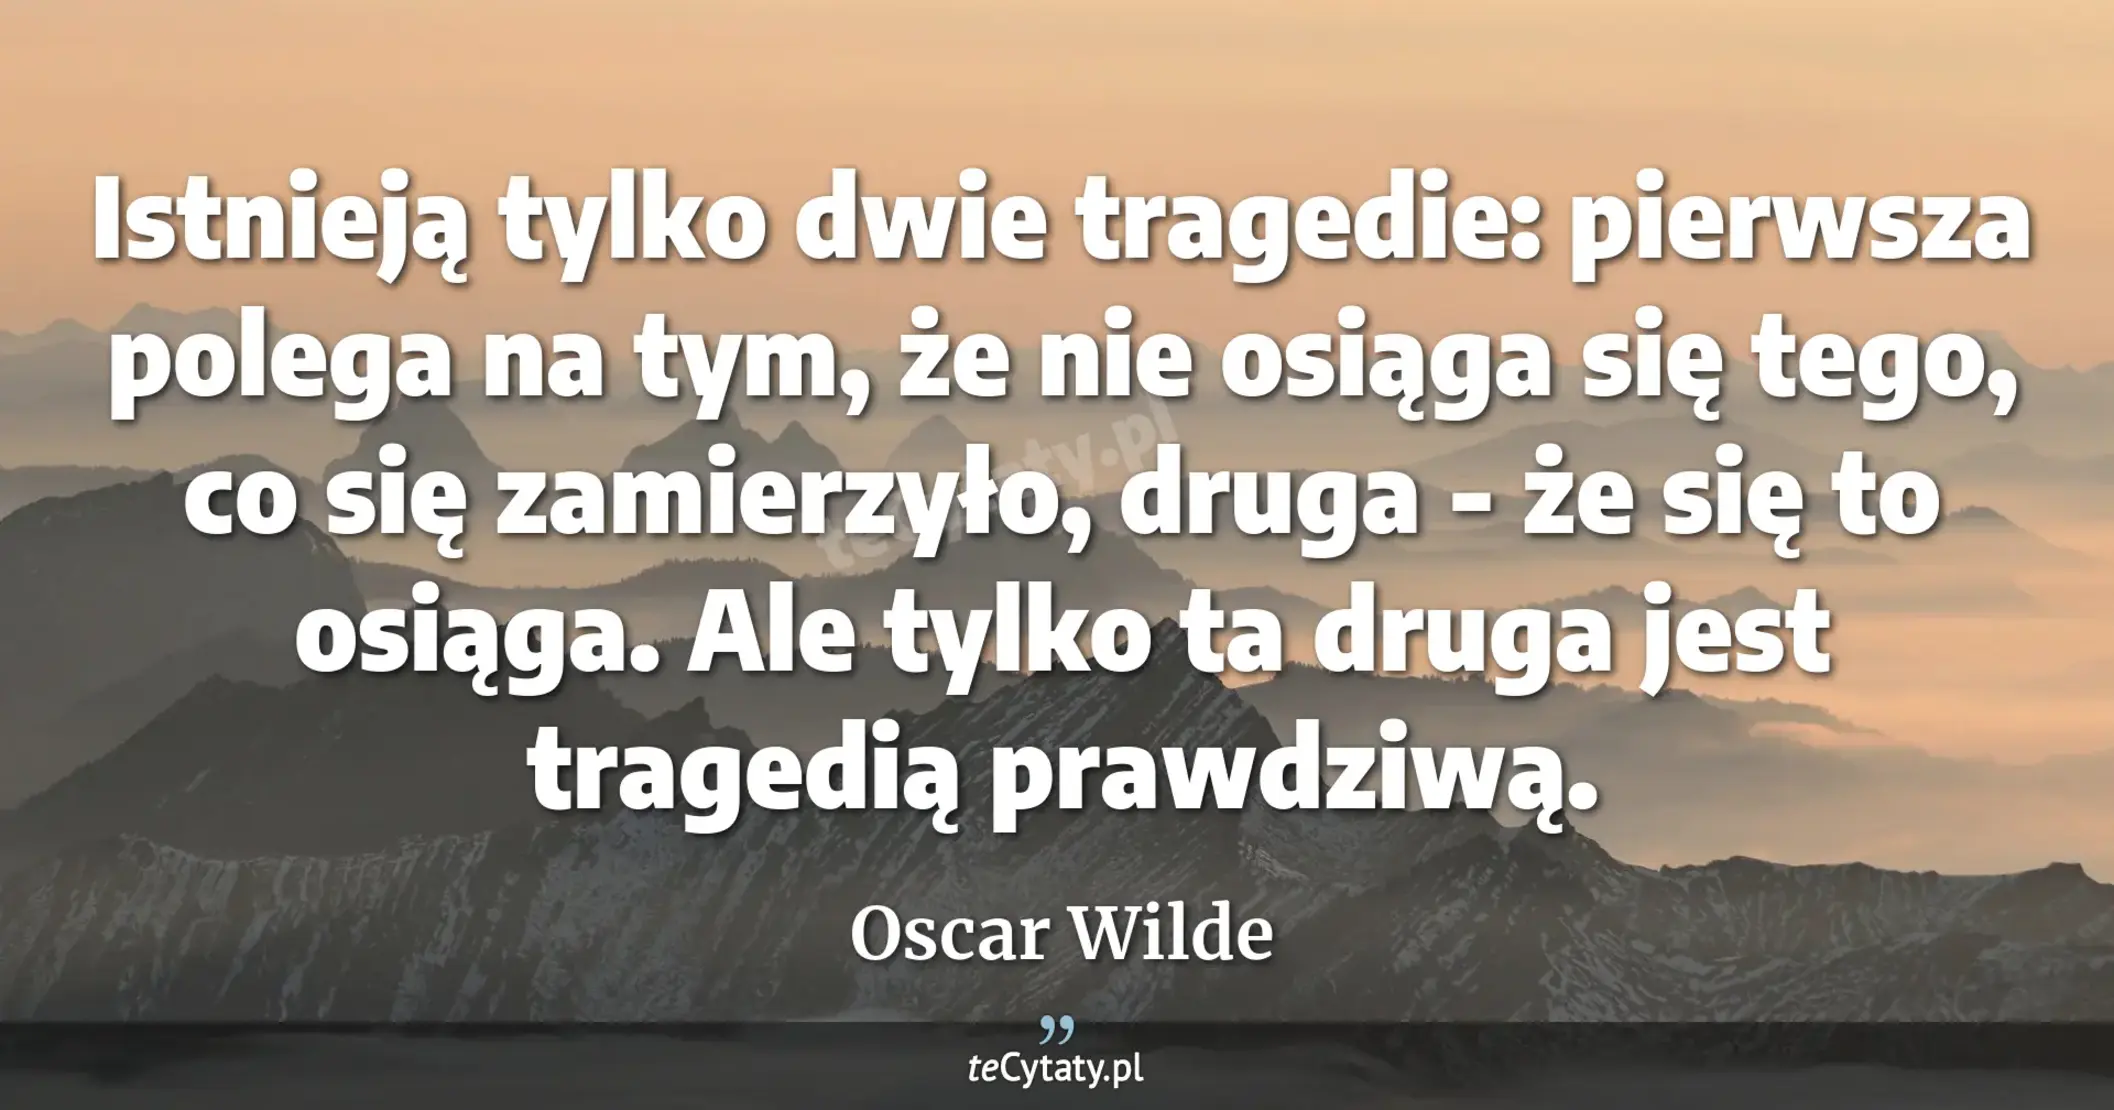 Istnieją tylko dwie tragedie: pierwsza polega na tym, że nie osiąga się tego, co się zamierzyło, druga - że się to osiąga. Ale tylko ta druga jest tragedią prawdziwą. - Oscar Wilde